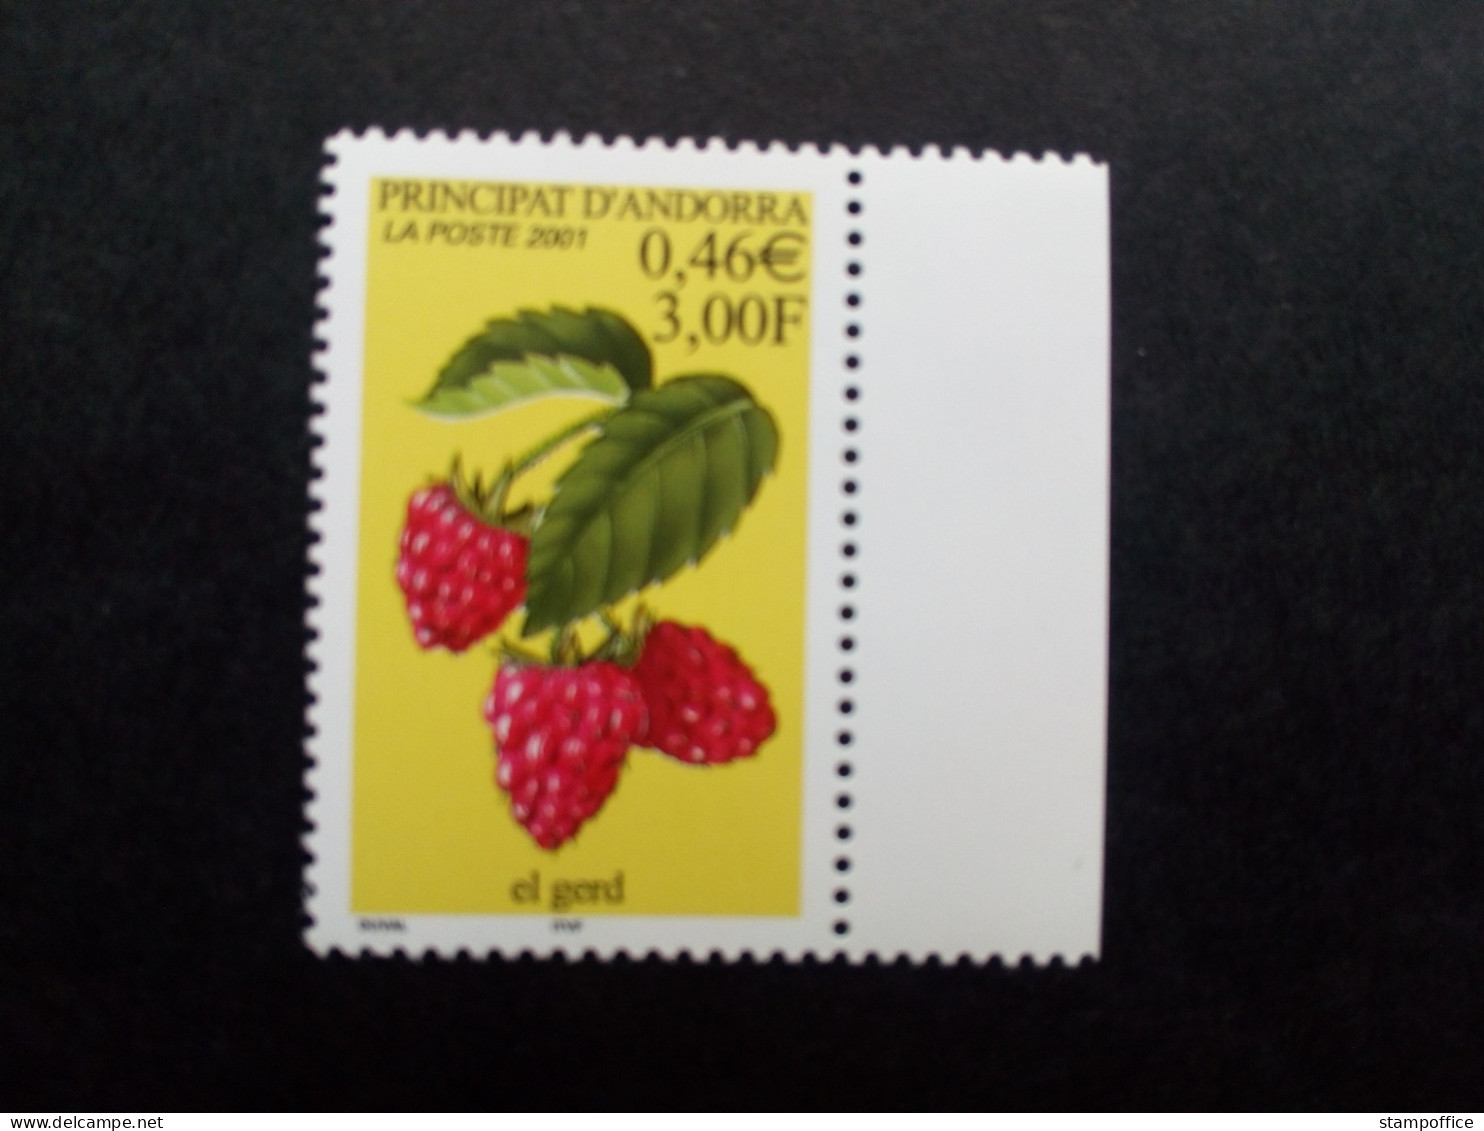 ANDORRA FRANZÖSISCH MI-NR. 568 POSTFRISCH(MINT) HIMBEERE 2001 - Unused Stamps